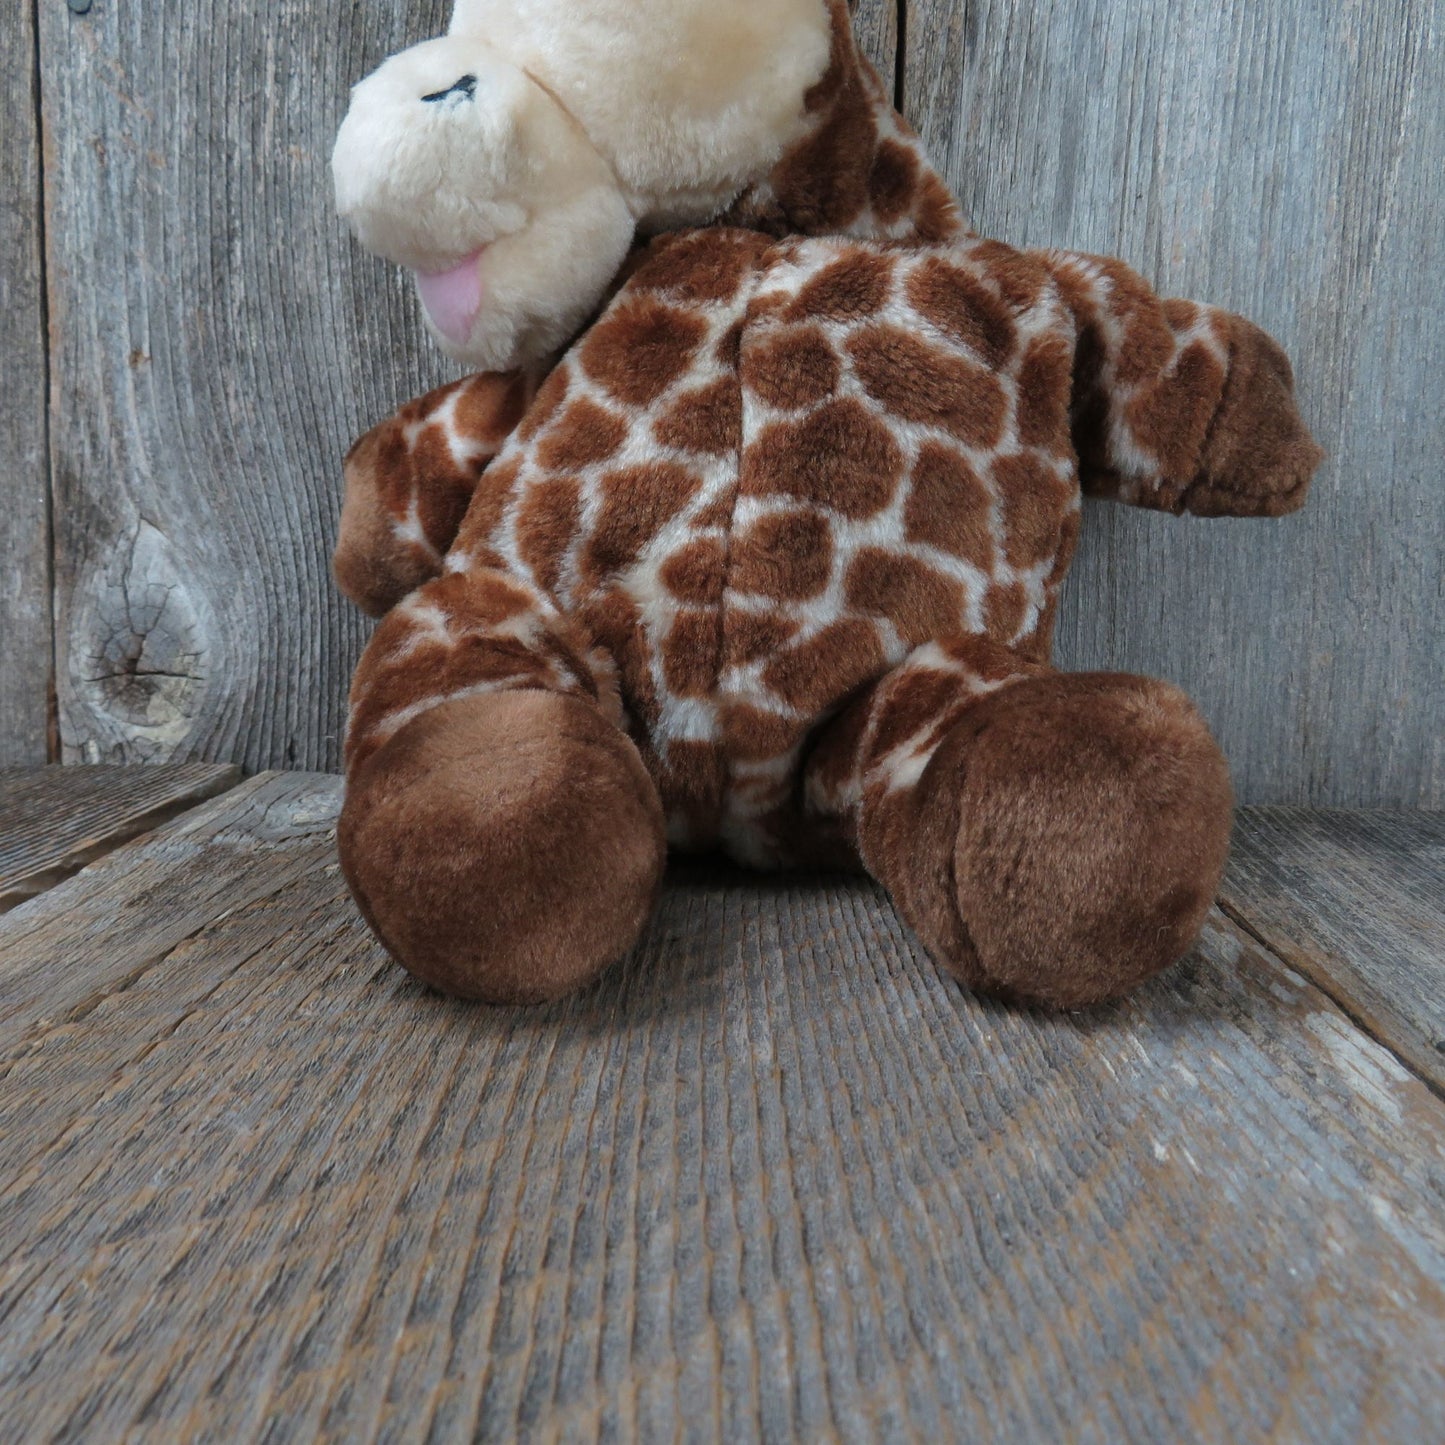 Vintage Gigi E. Giraffe Puppet Stuffed Animal Awana Sunday Vacation Bible School Plush Church Group